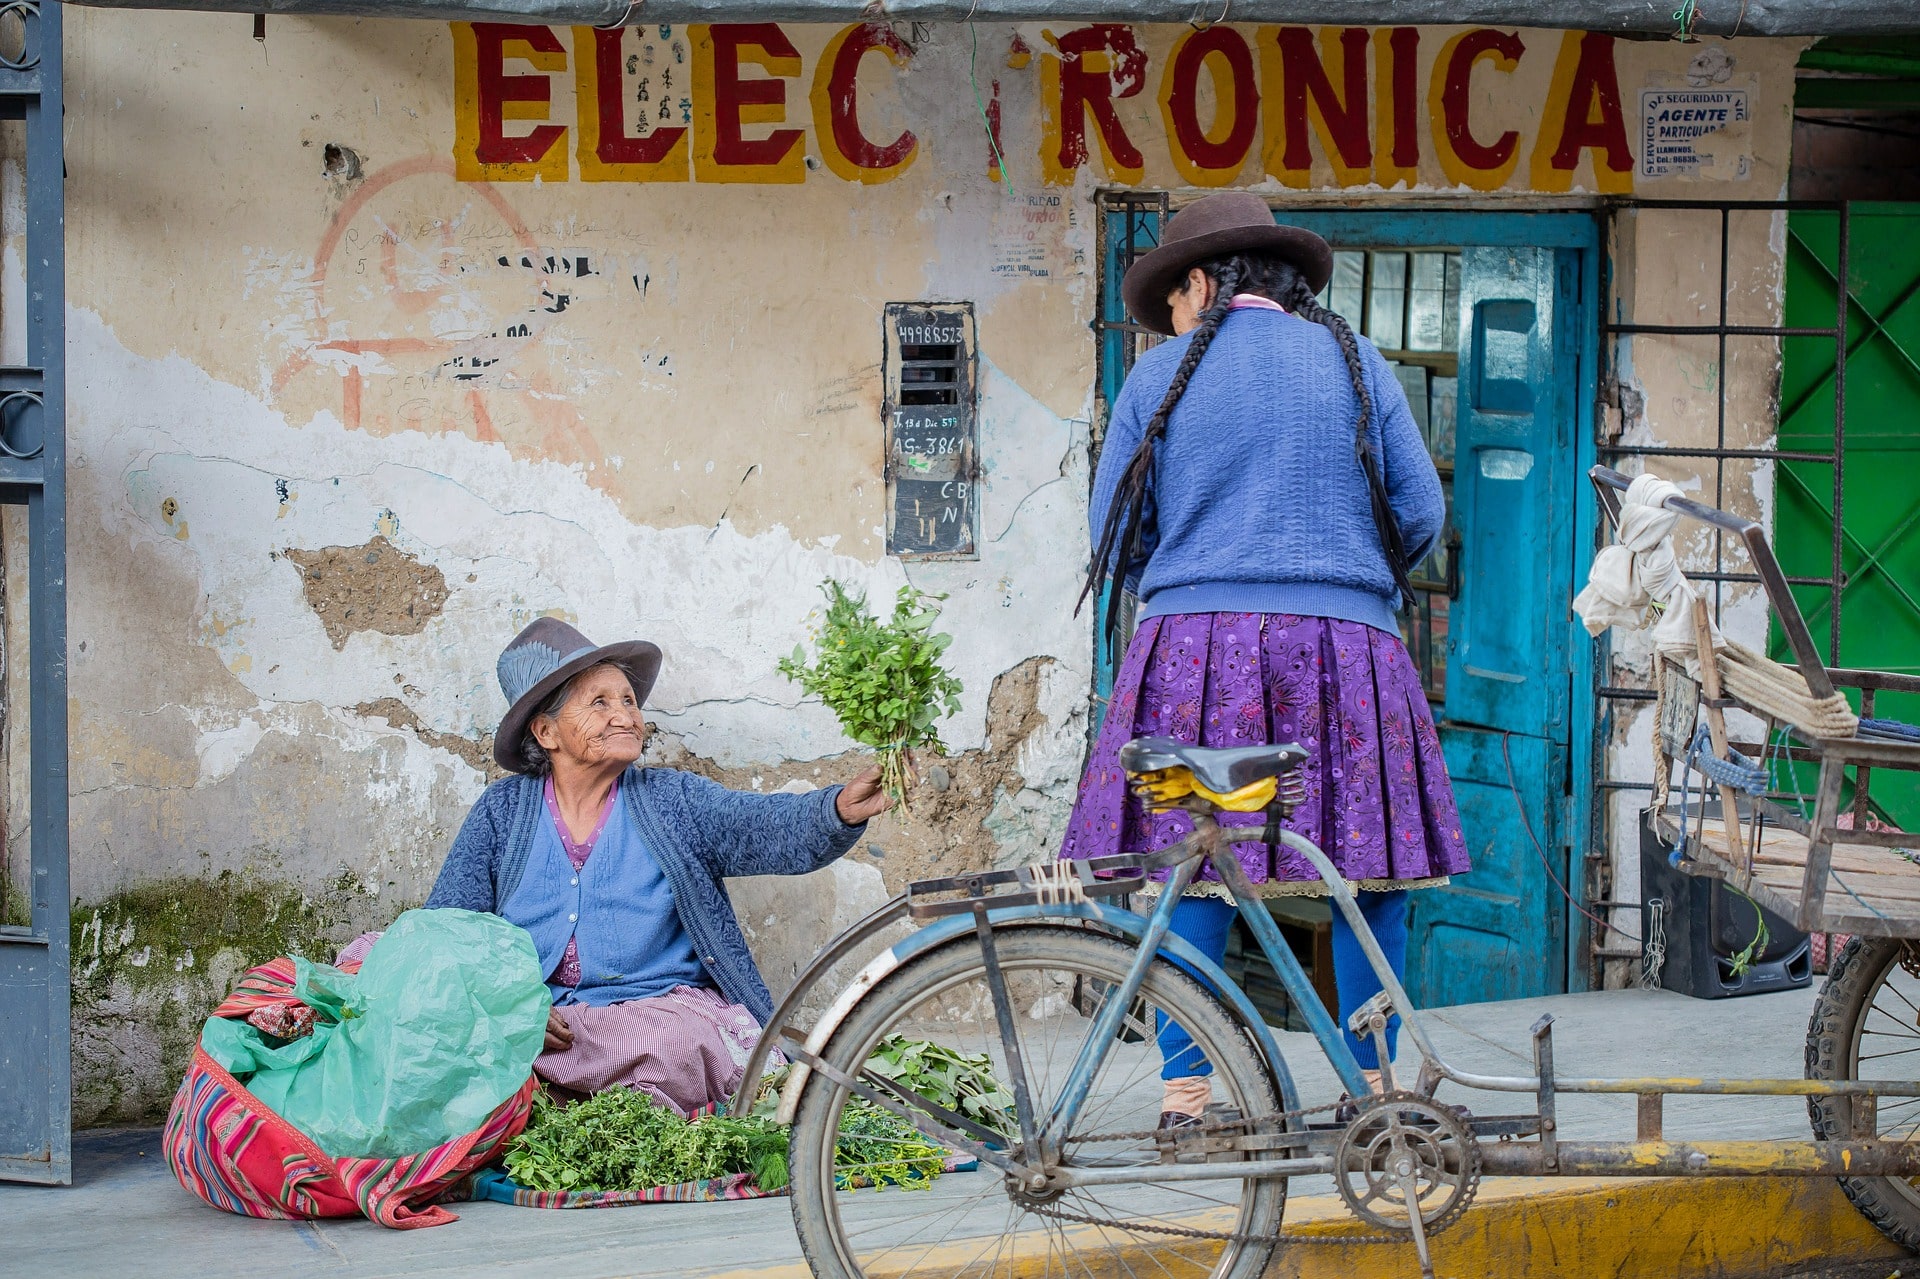 Volontariato internazionale in Perù per l’inclusione finanziaria delle donne